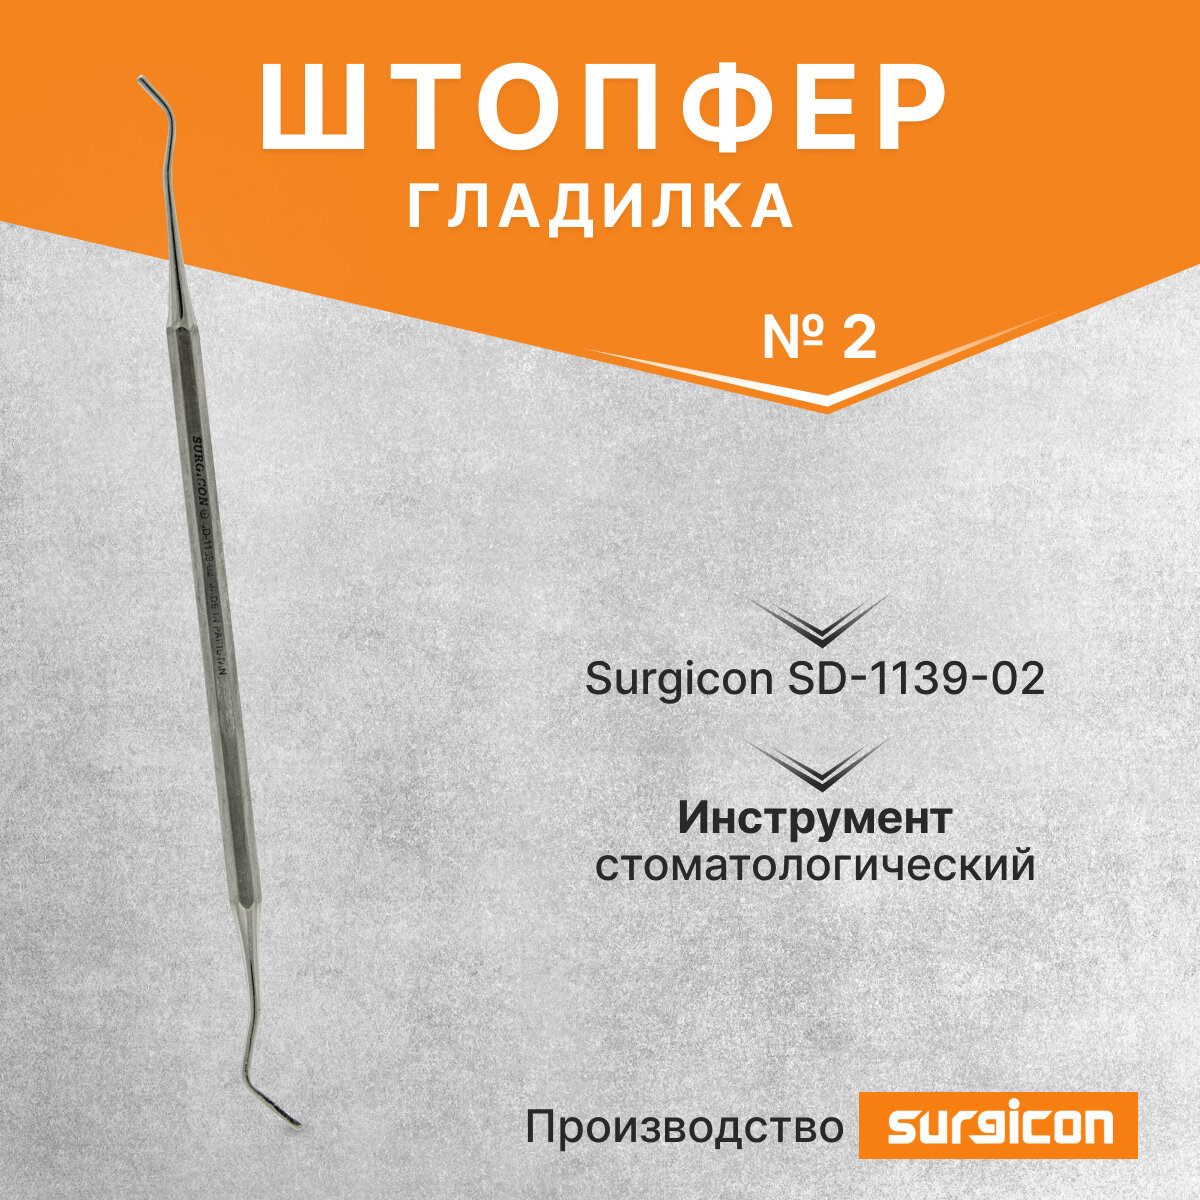 Штопфер - гладилка №2 Surgicon SD-1139-02